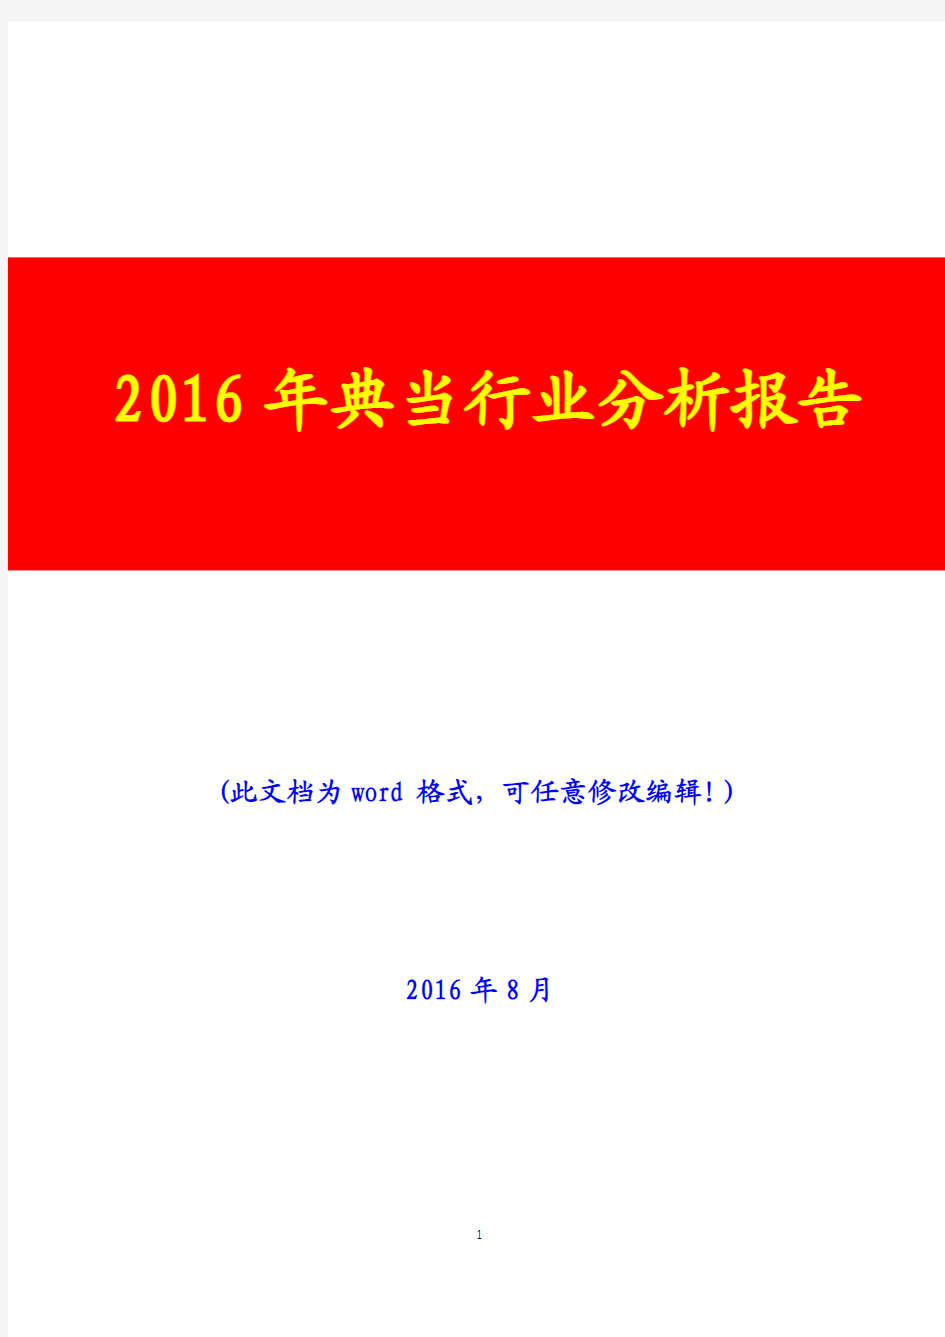 2016年典当行业分析报告(经典版)